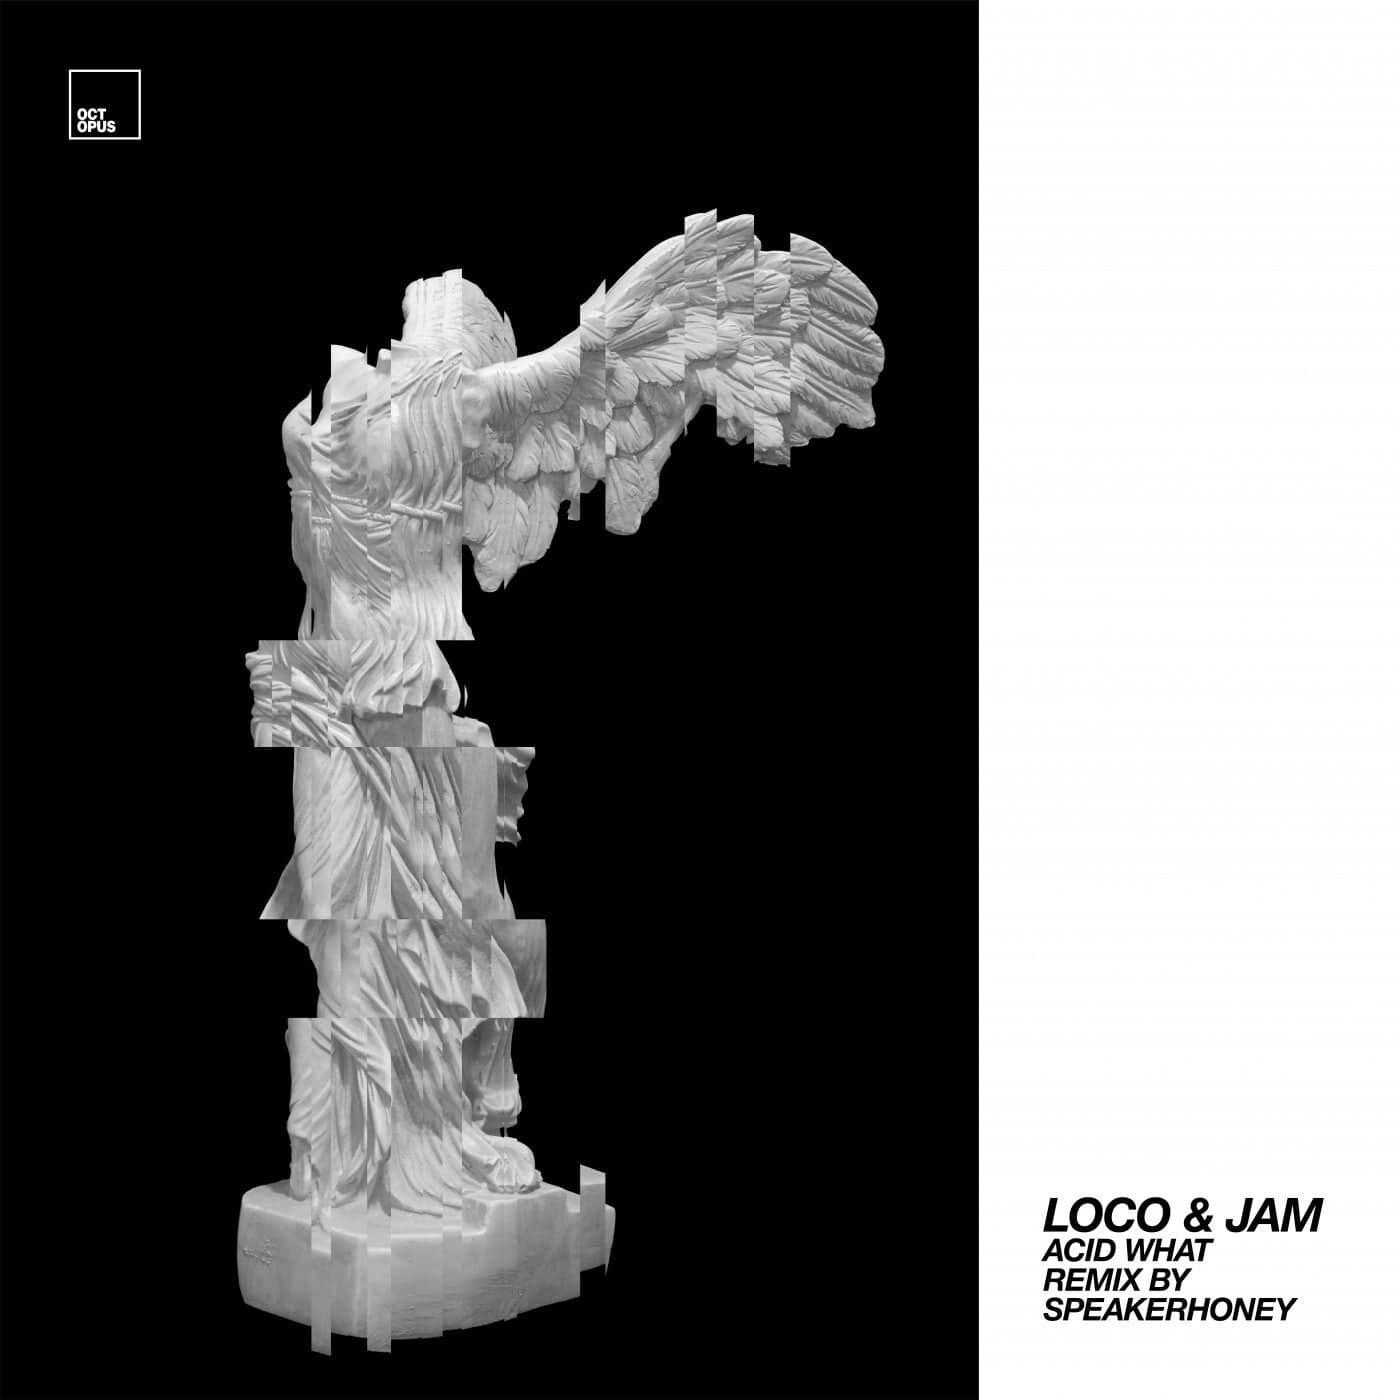 image cover: Loco & Jam - Acid What? / OCT219